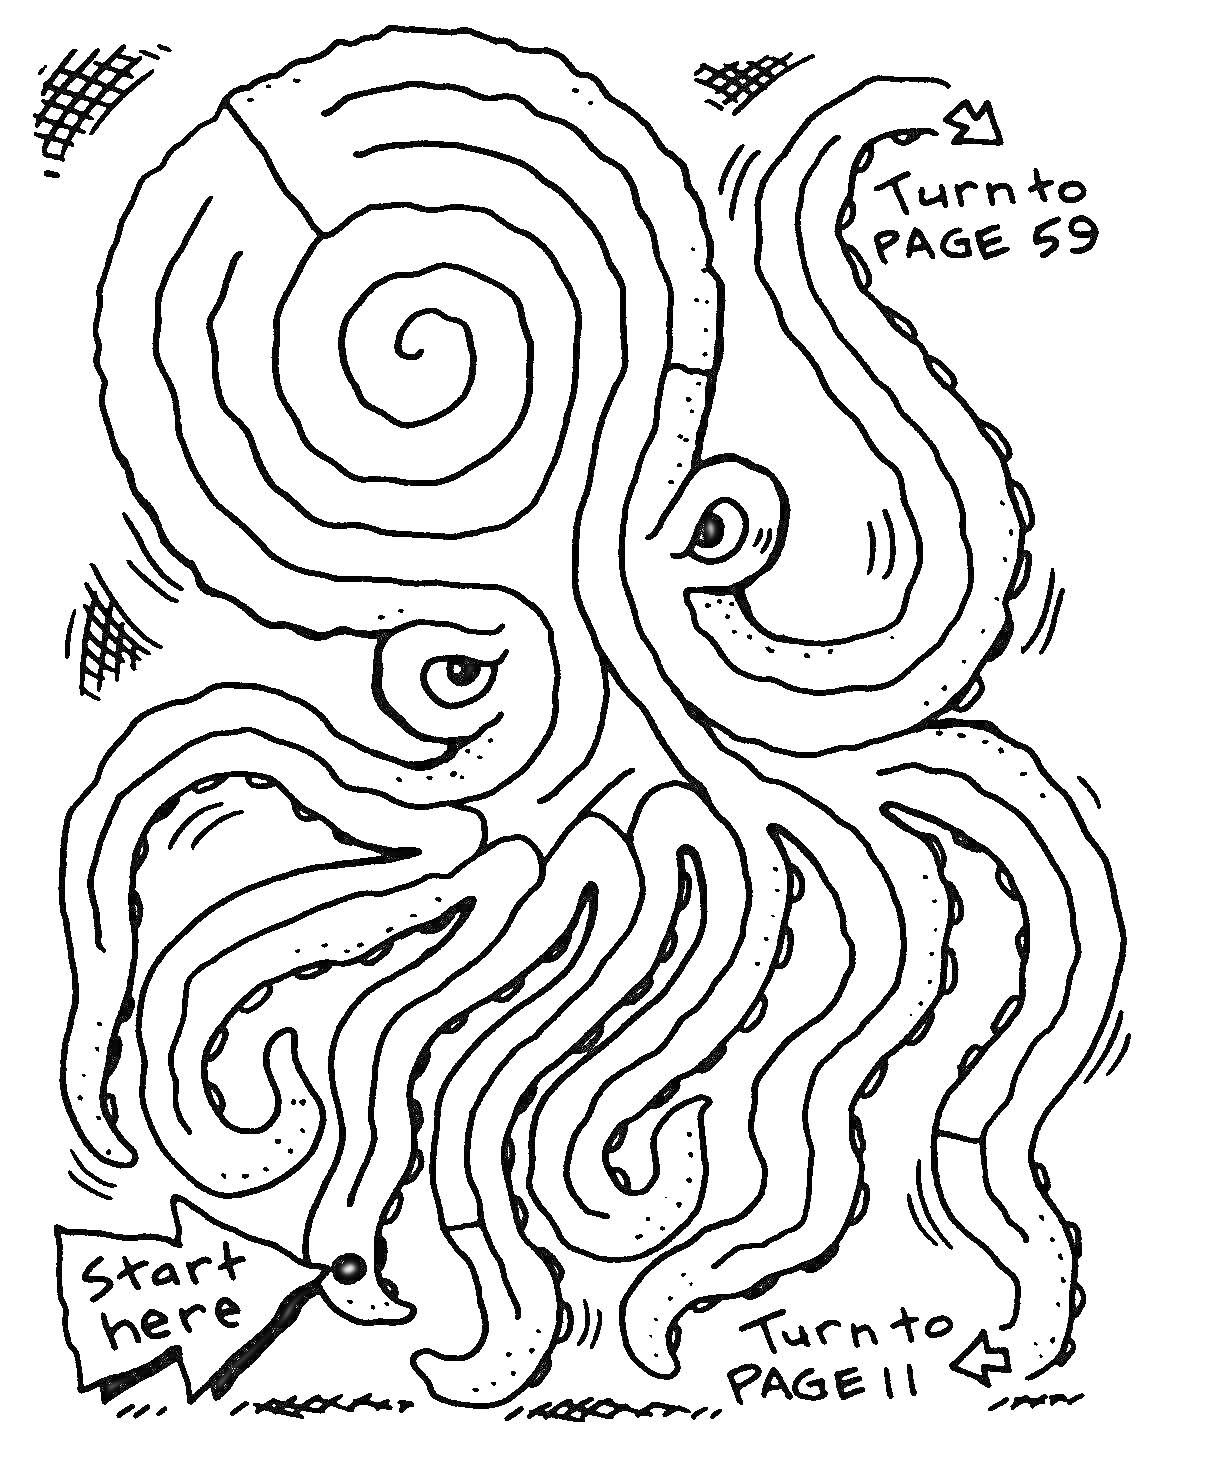 РаскраскаЛабиринт в форме осьминога с указателями на страницы 59 и 11